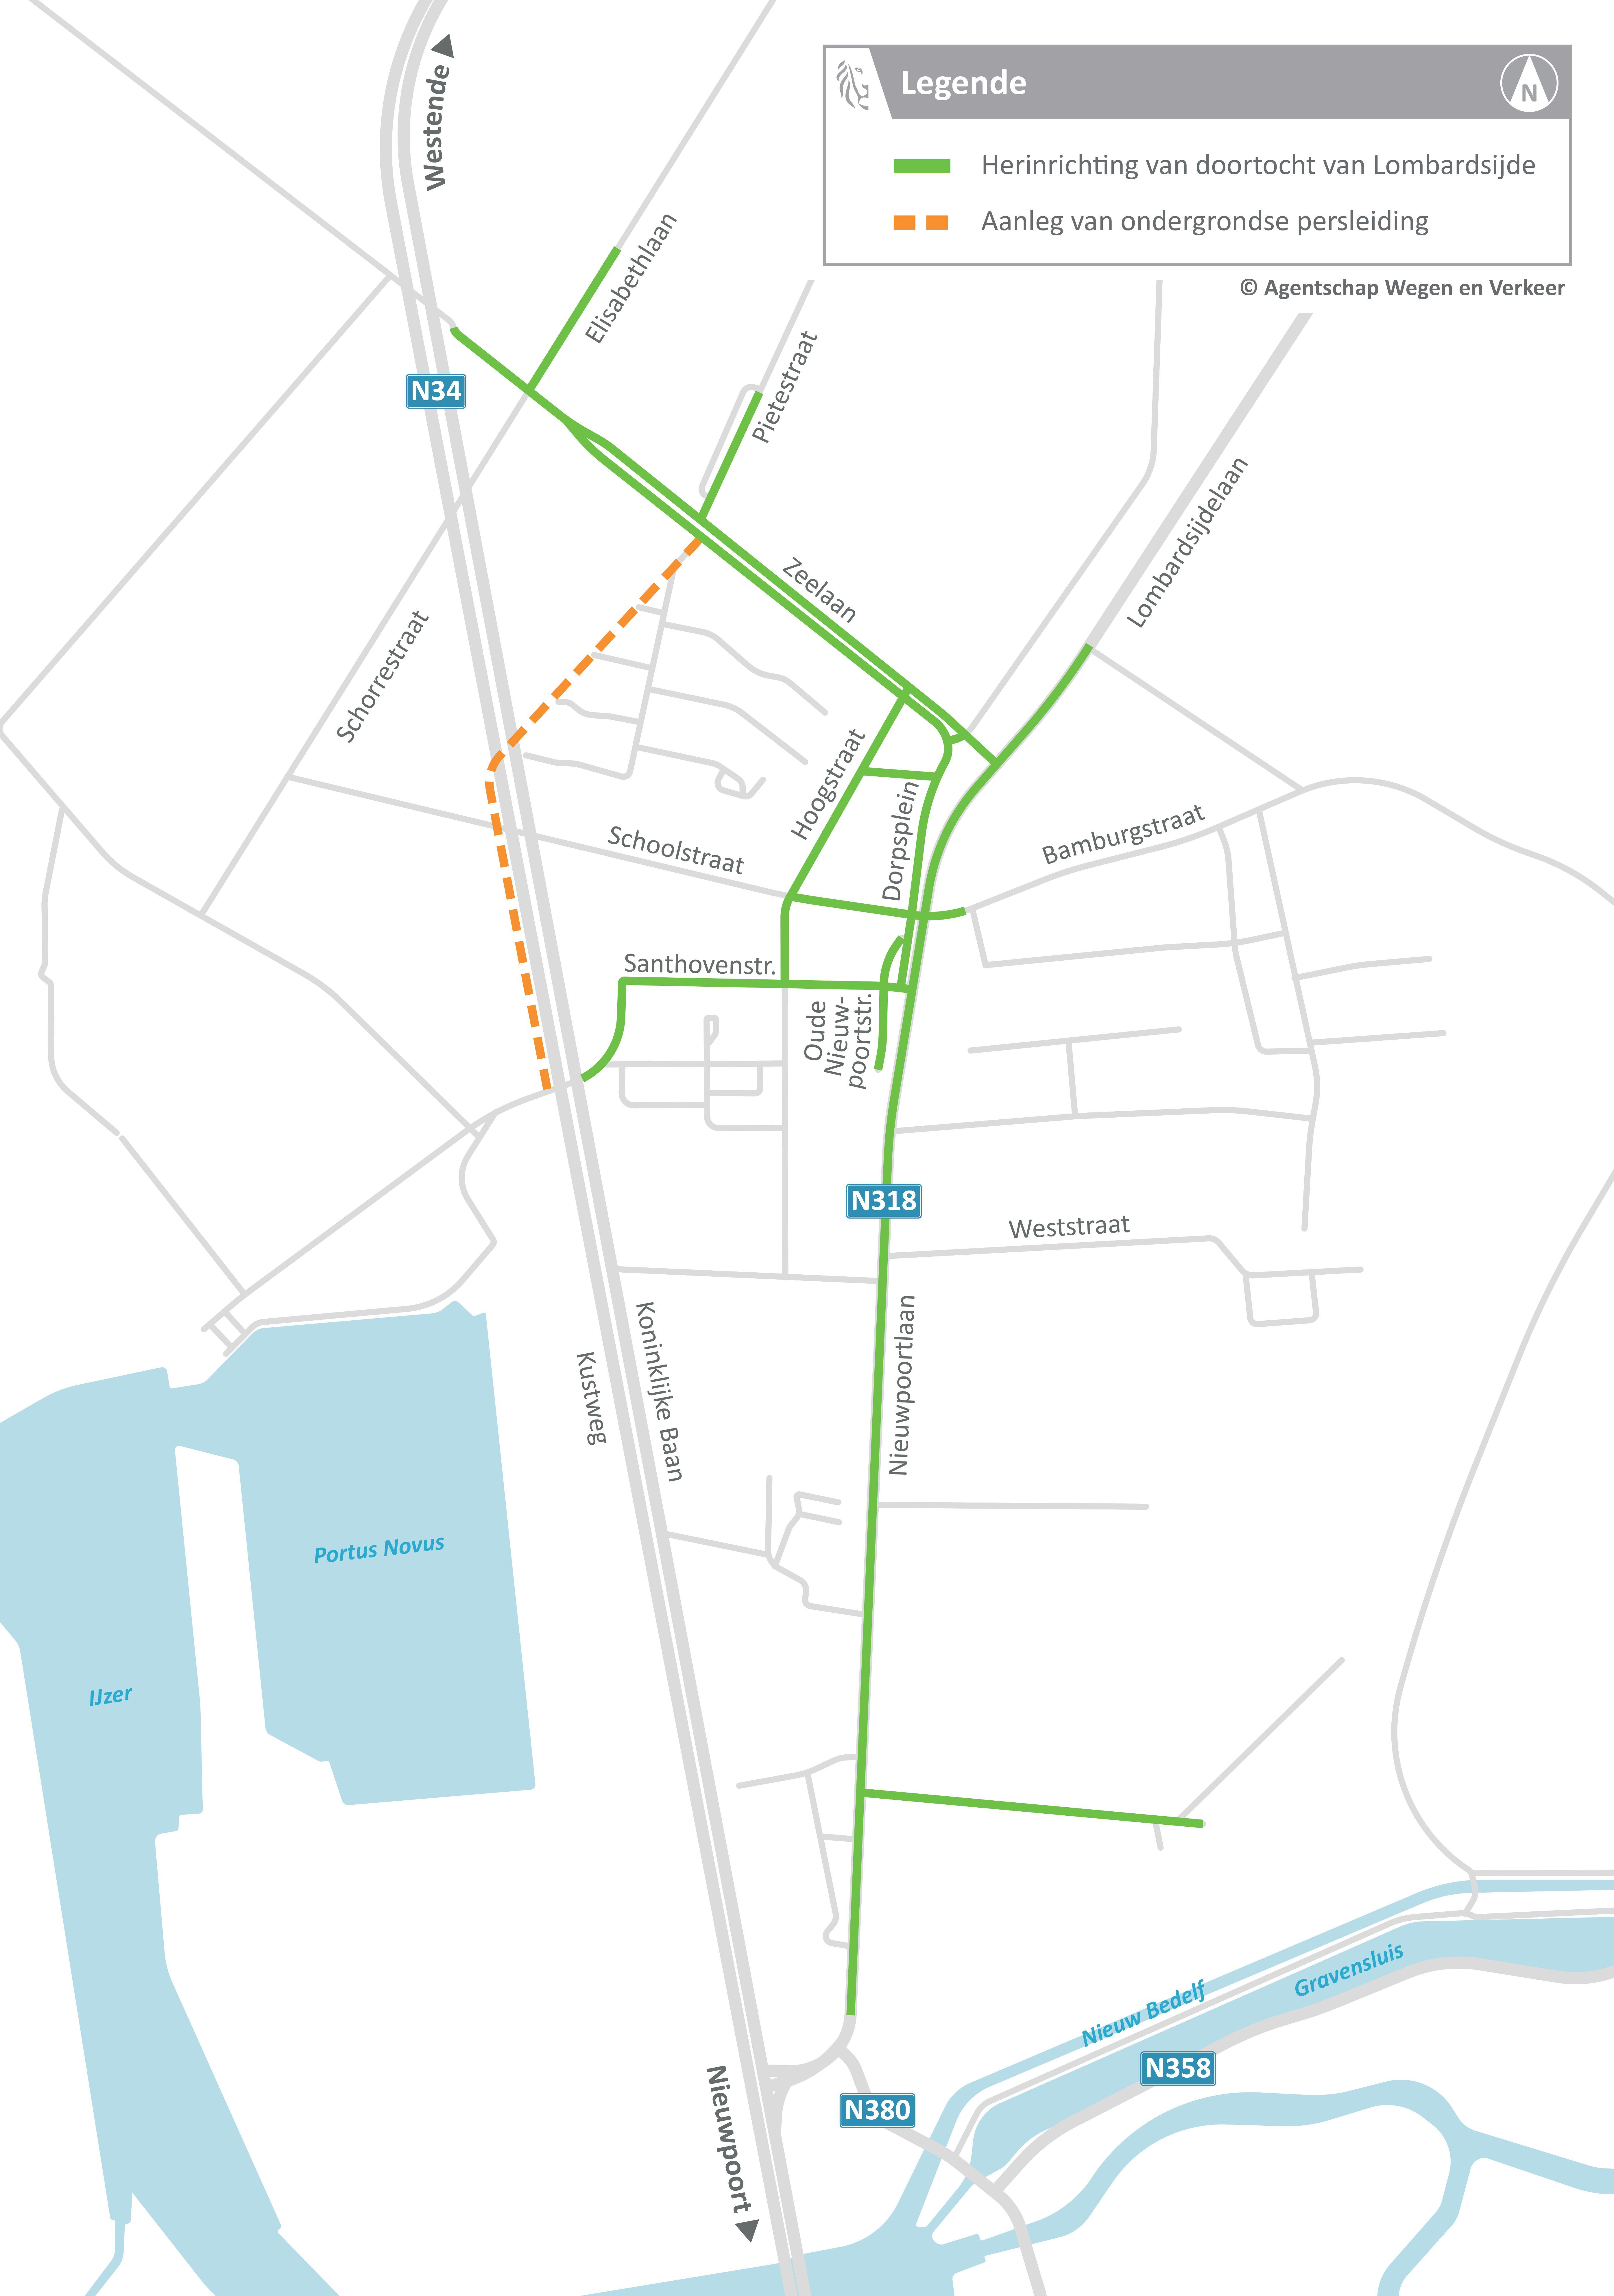 Projectzone in kaart: doortocht van Lombardsijde